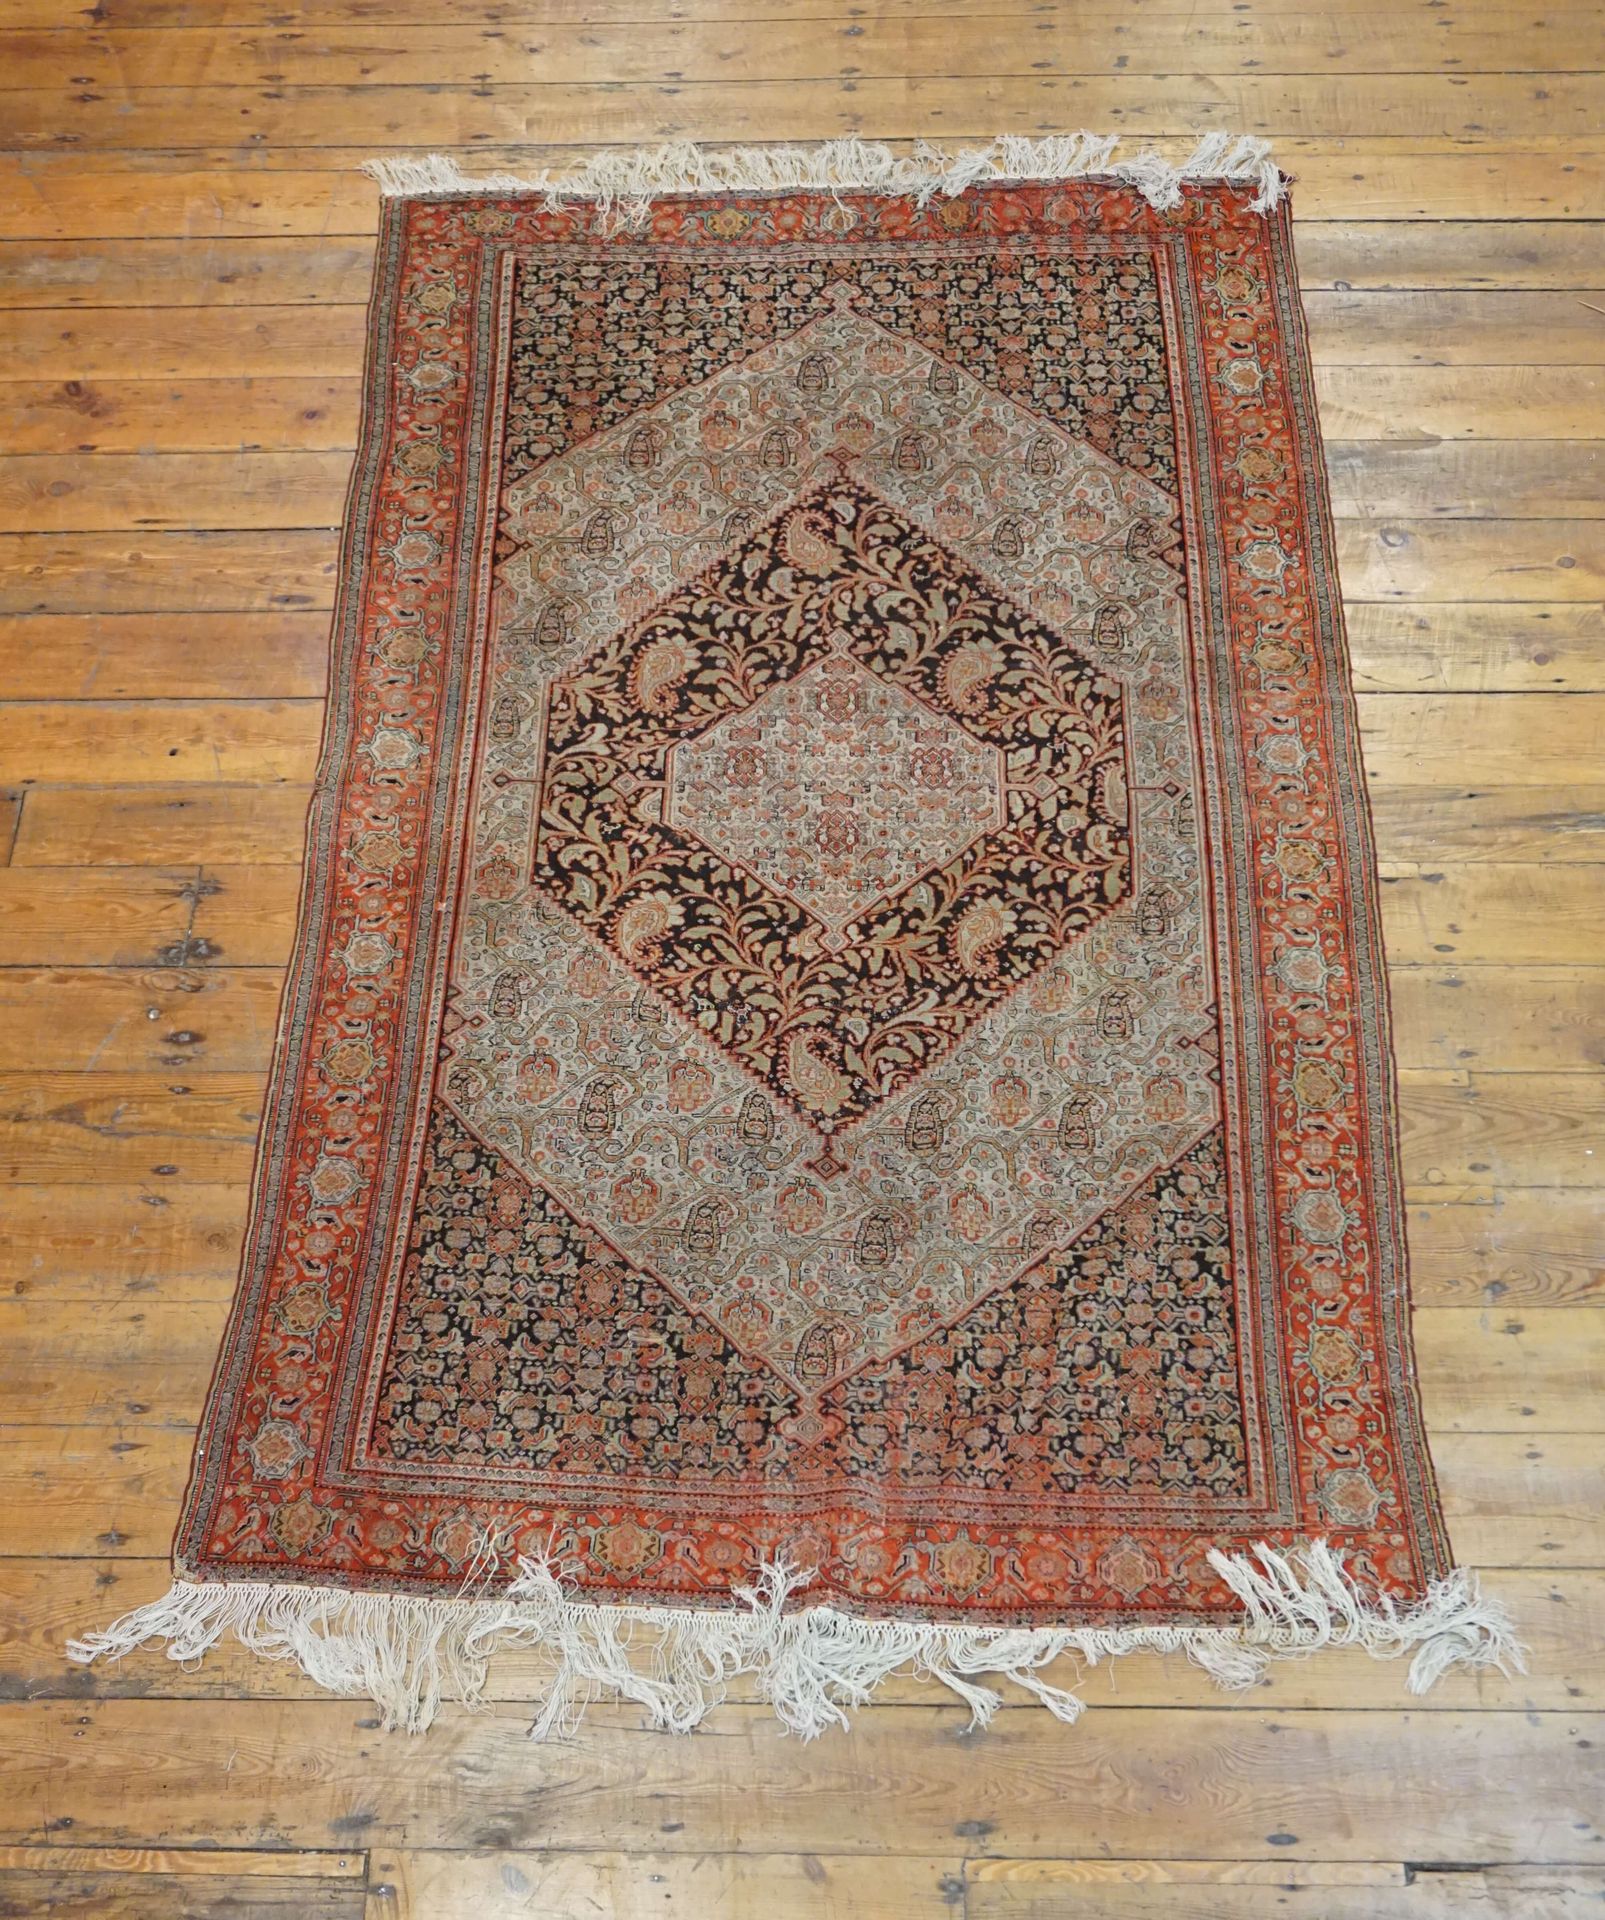 Null Oriental carpet. 200x126 cm